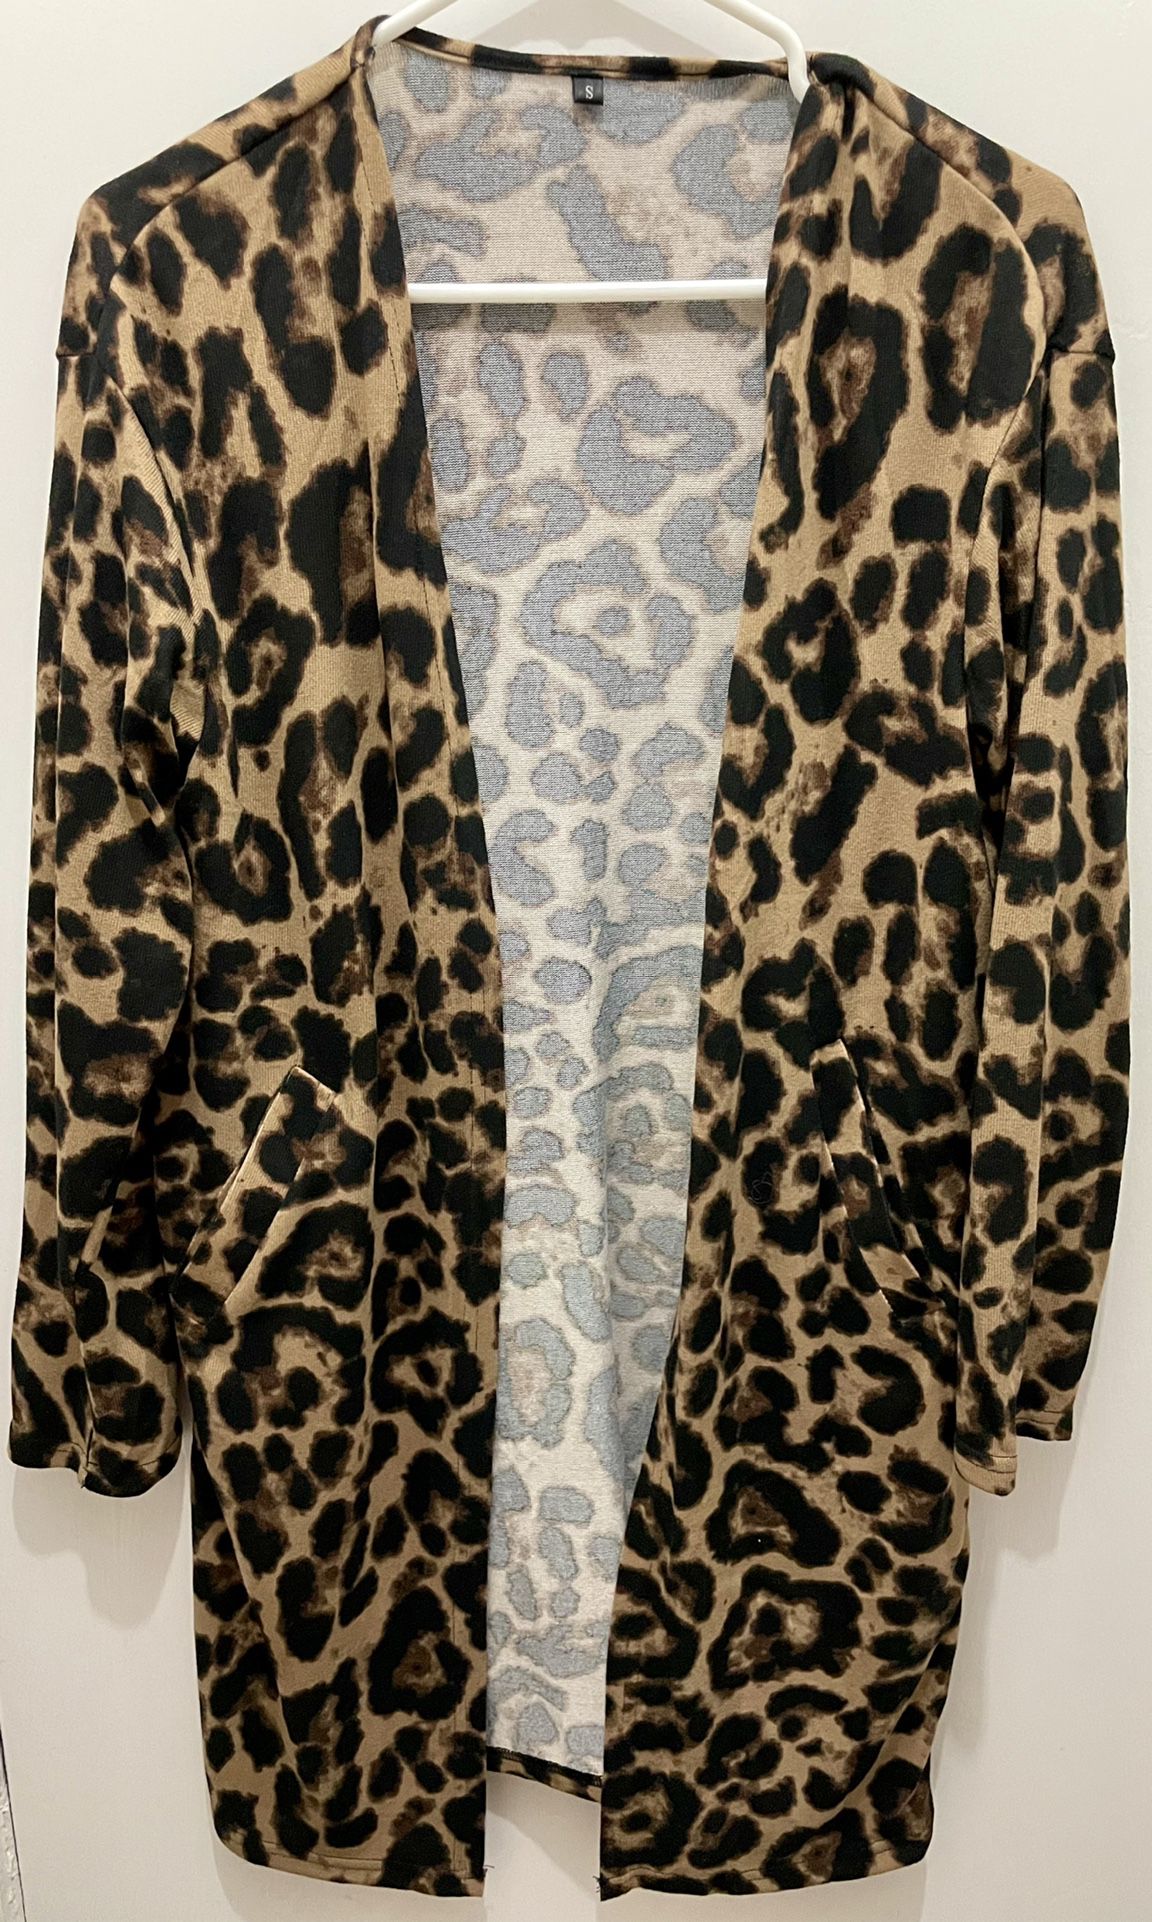 Leopard Print Cardigan, Size Small